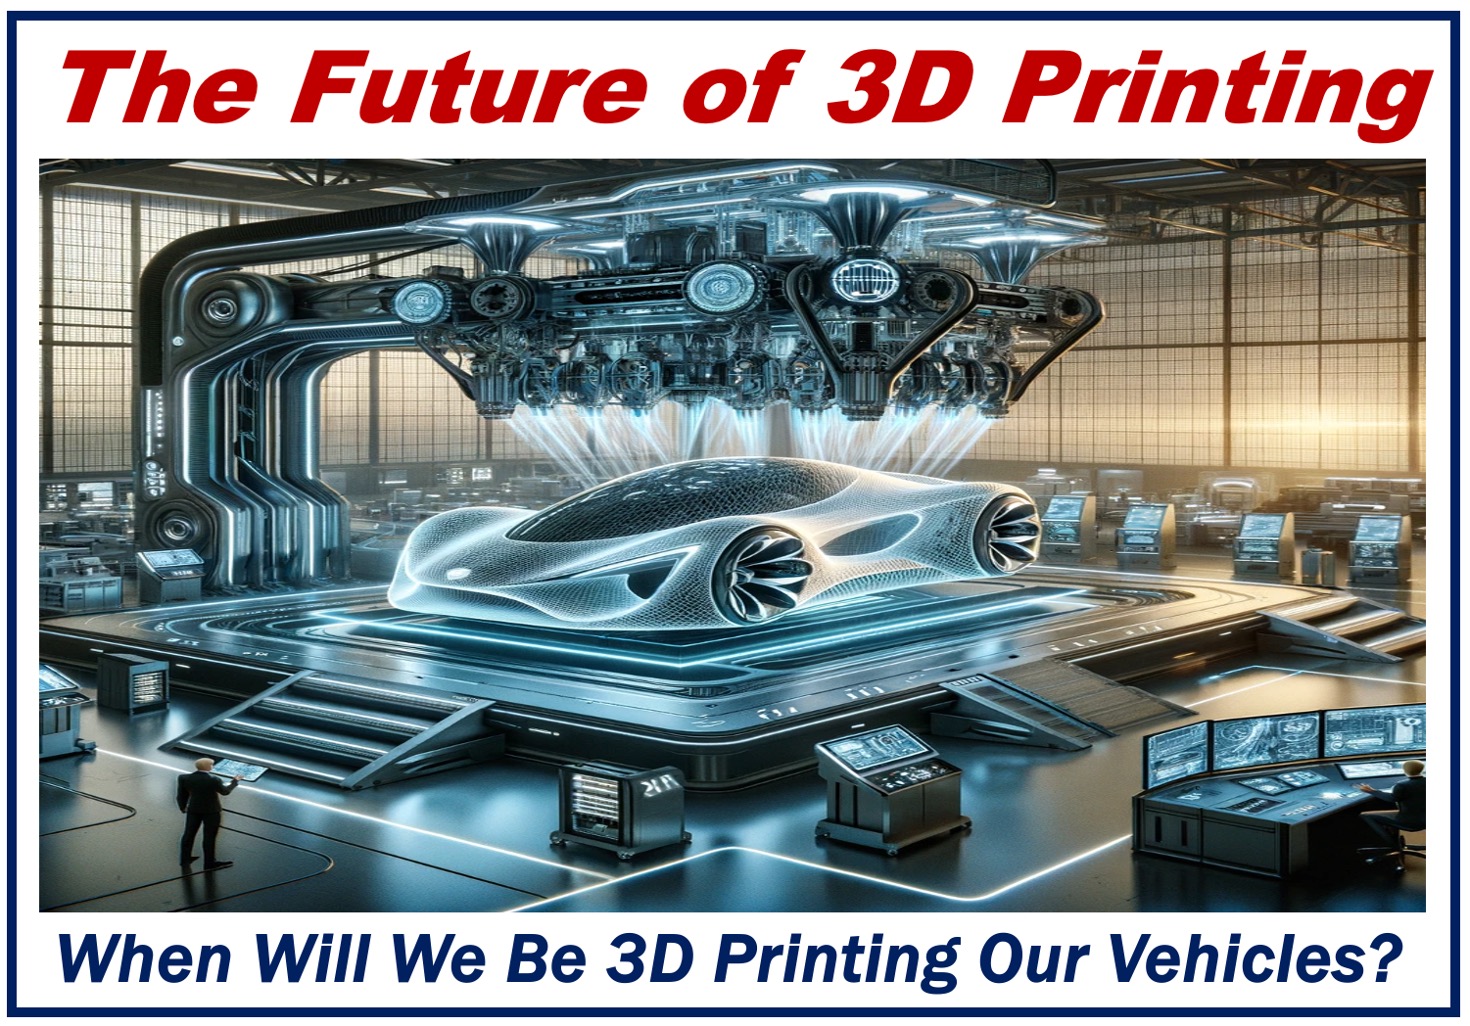 A Futuristic 3D Printer making a car.